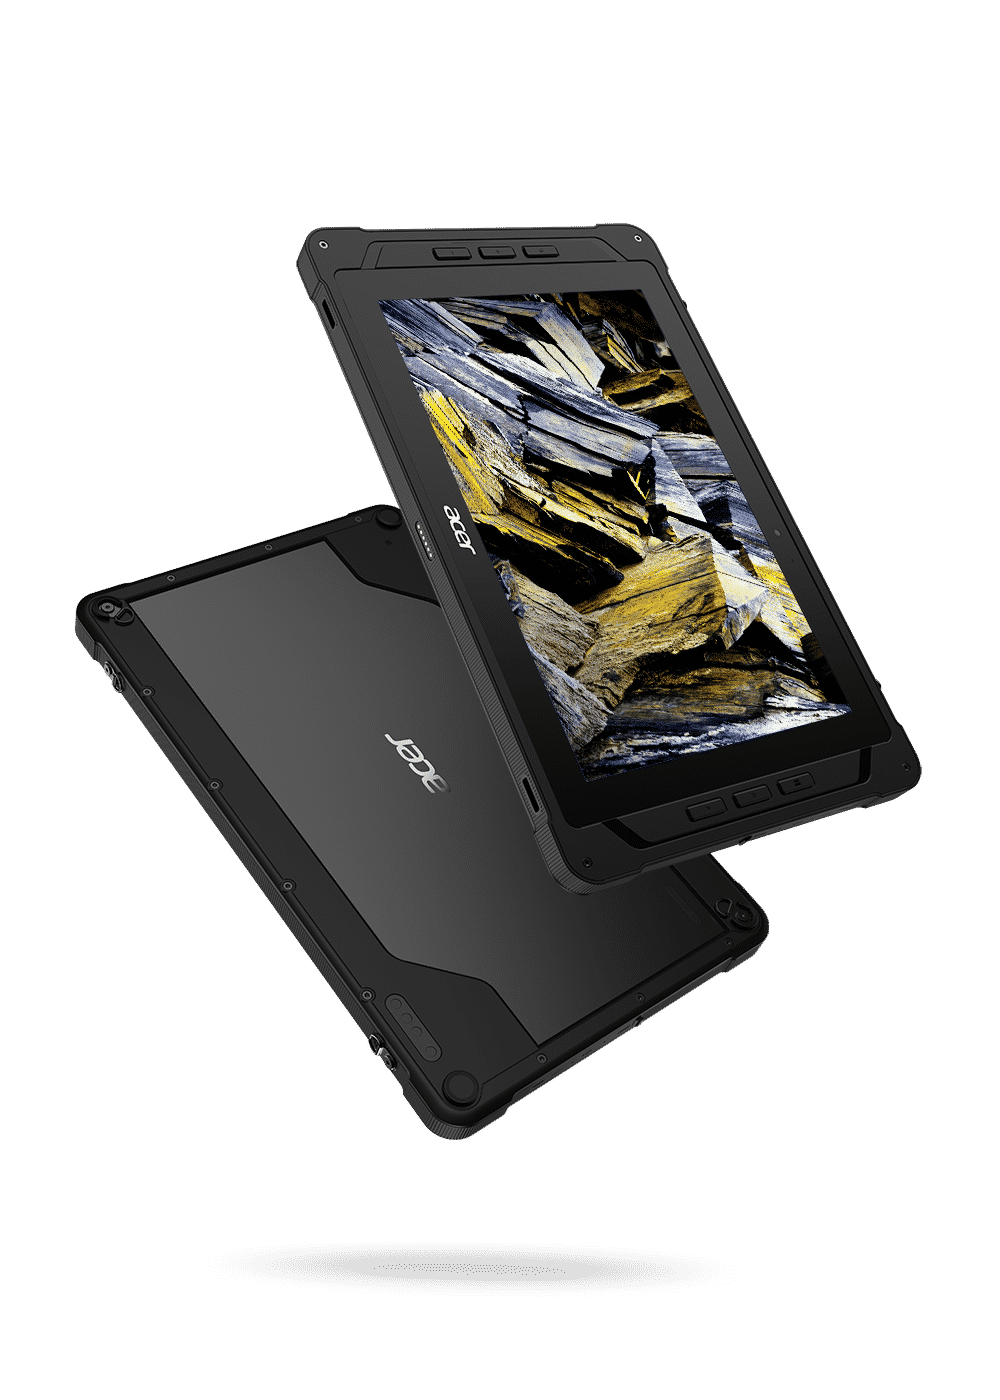 Acer Enduro serisi dizüstü bilgisayar ve tabletler sahada çalışanlar için